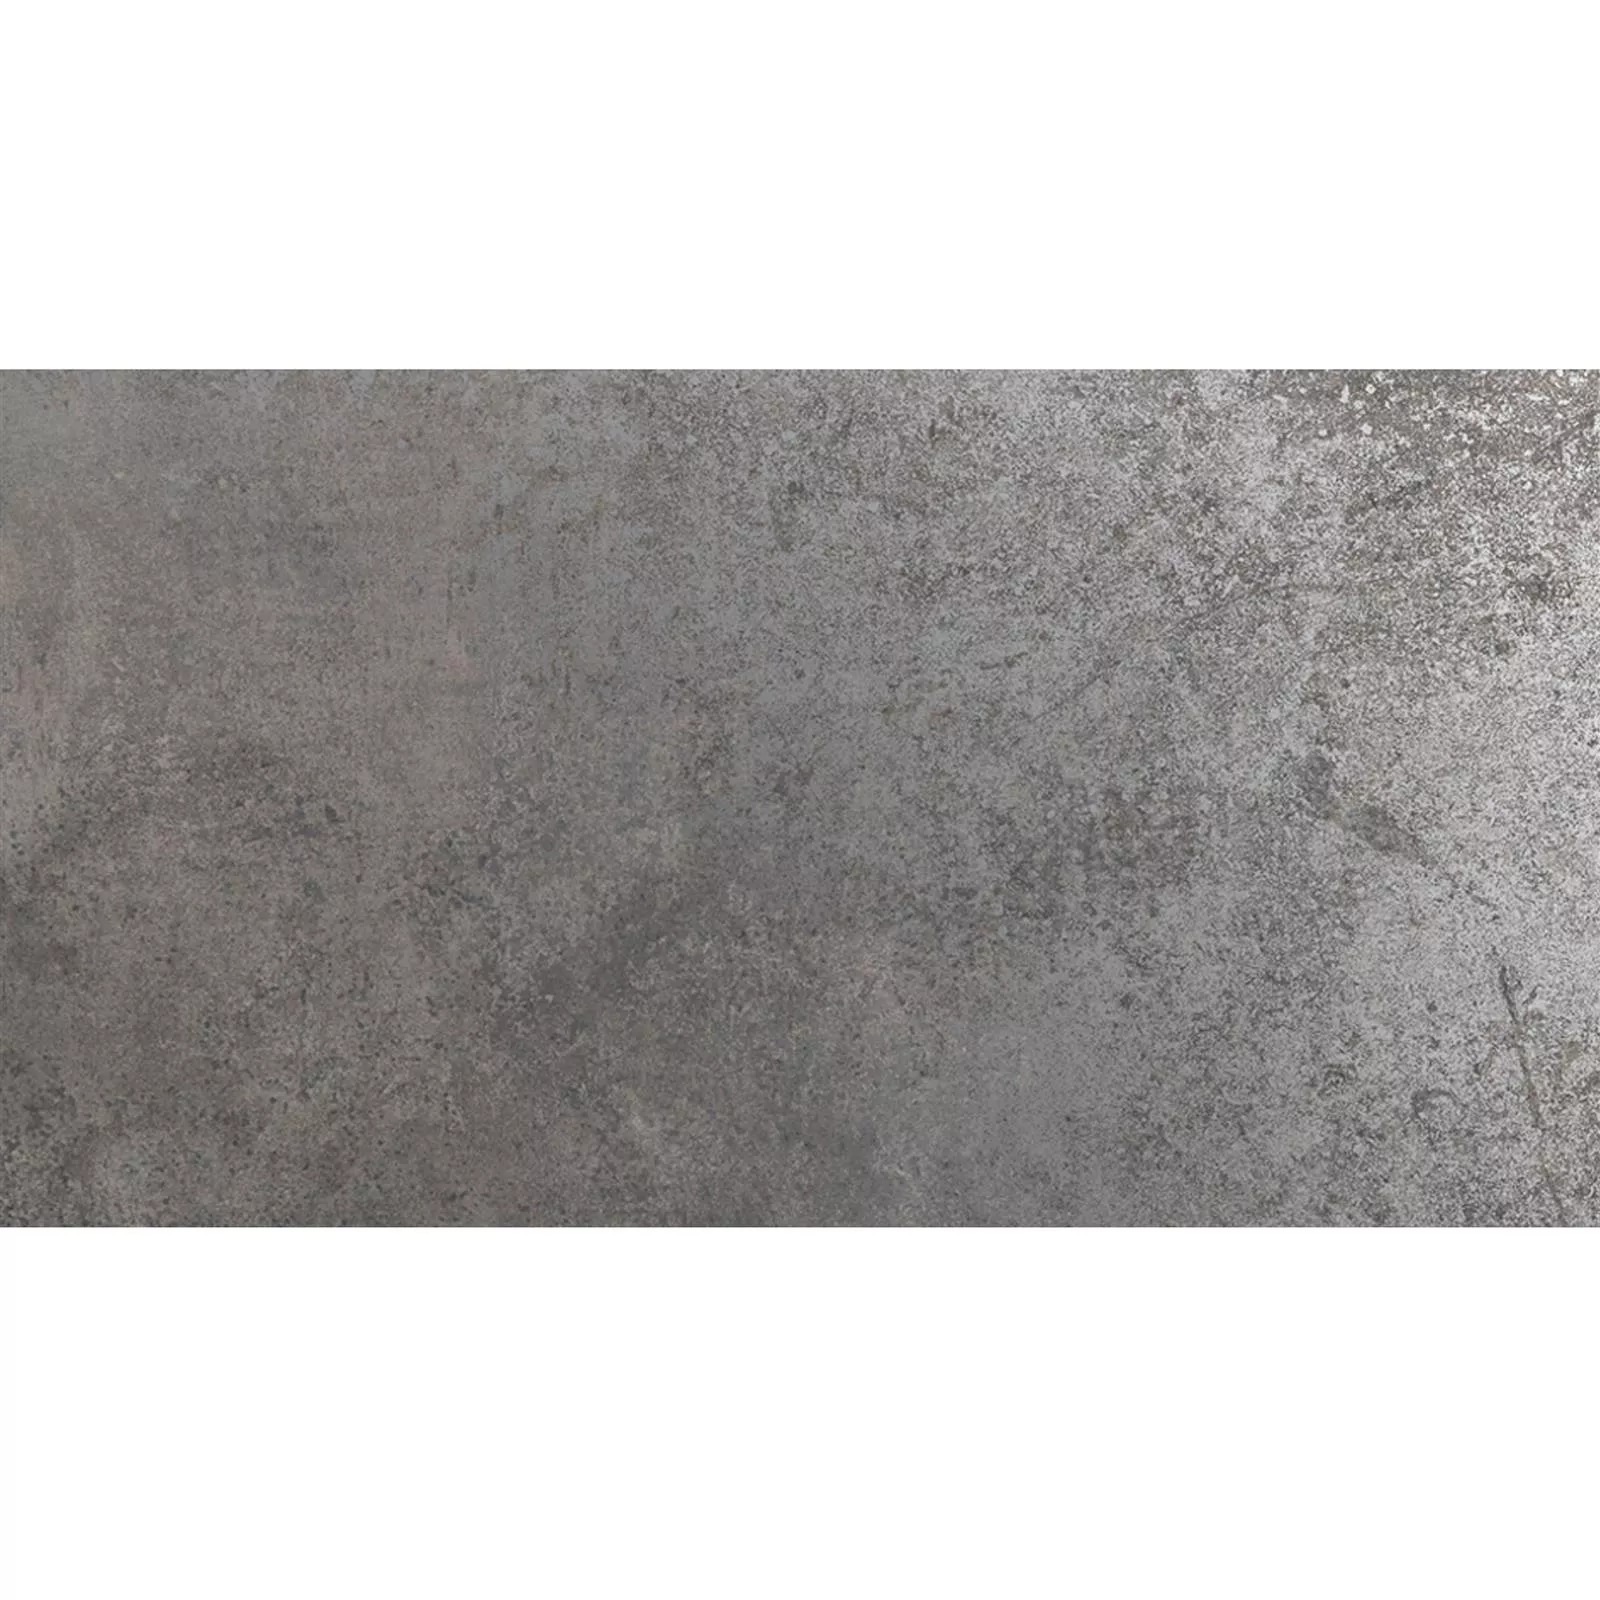 Πλακάκια Δαπέδου Marathon Μεταλλική Εμφάνιση Ασήμι R10/B 30x60cm